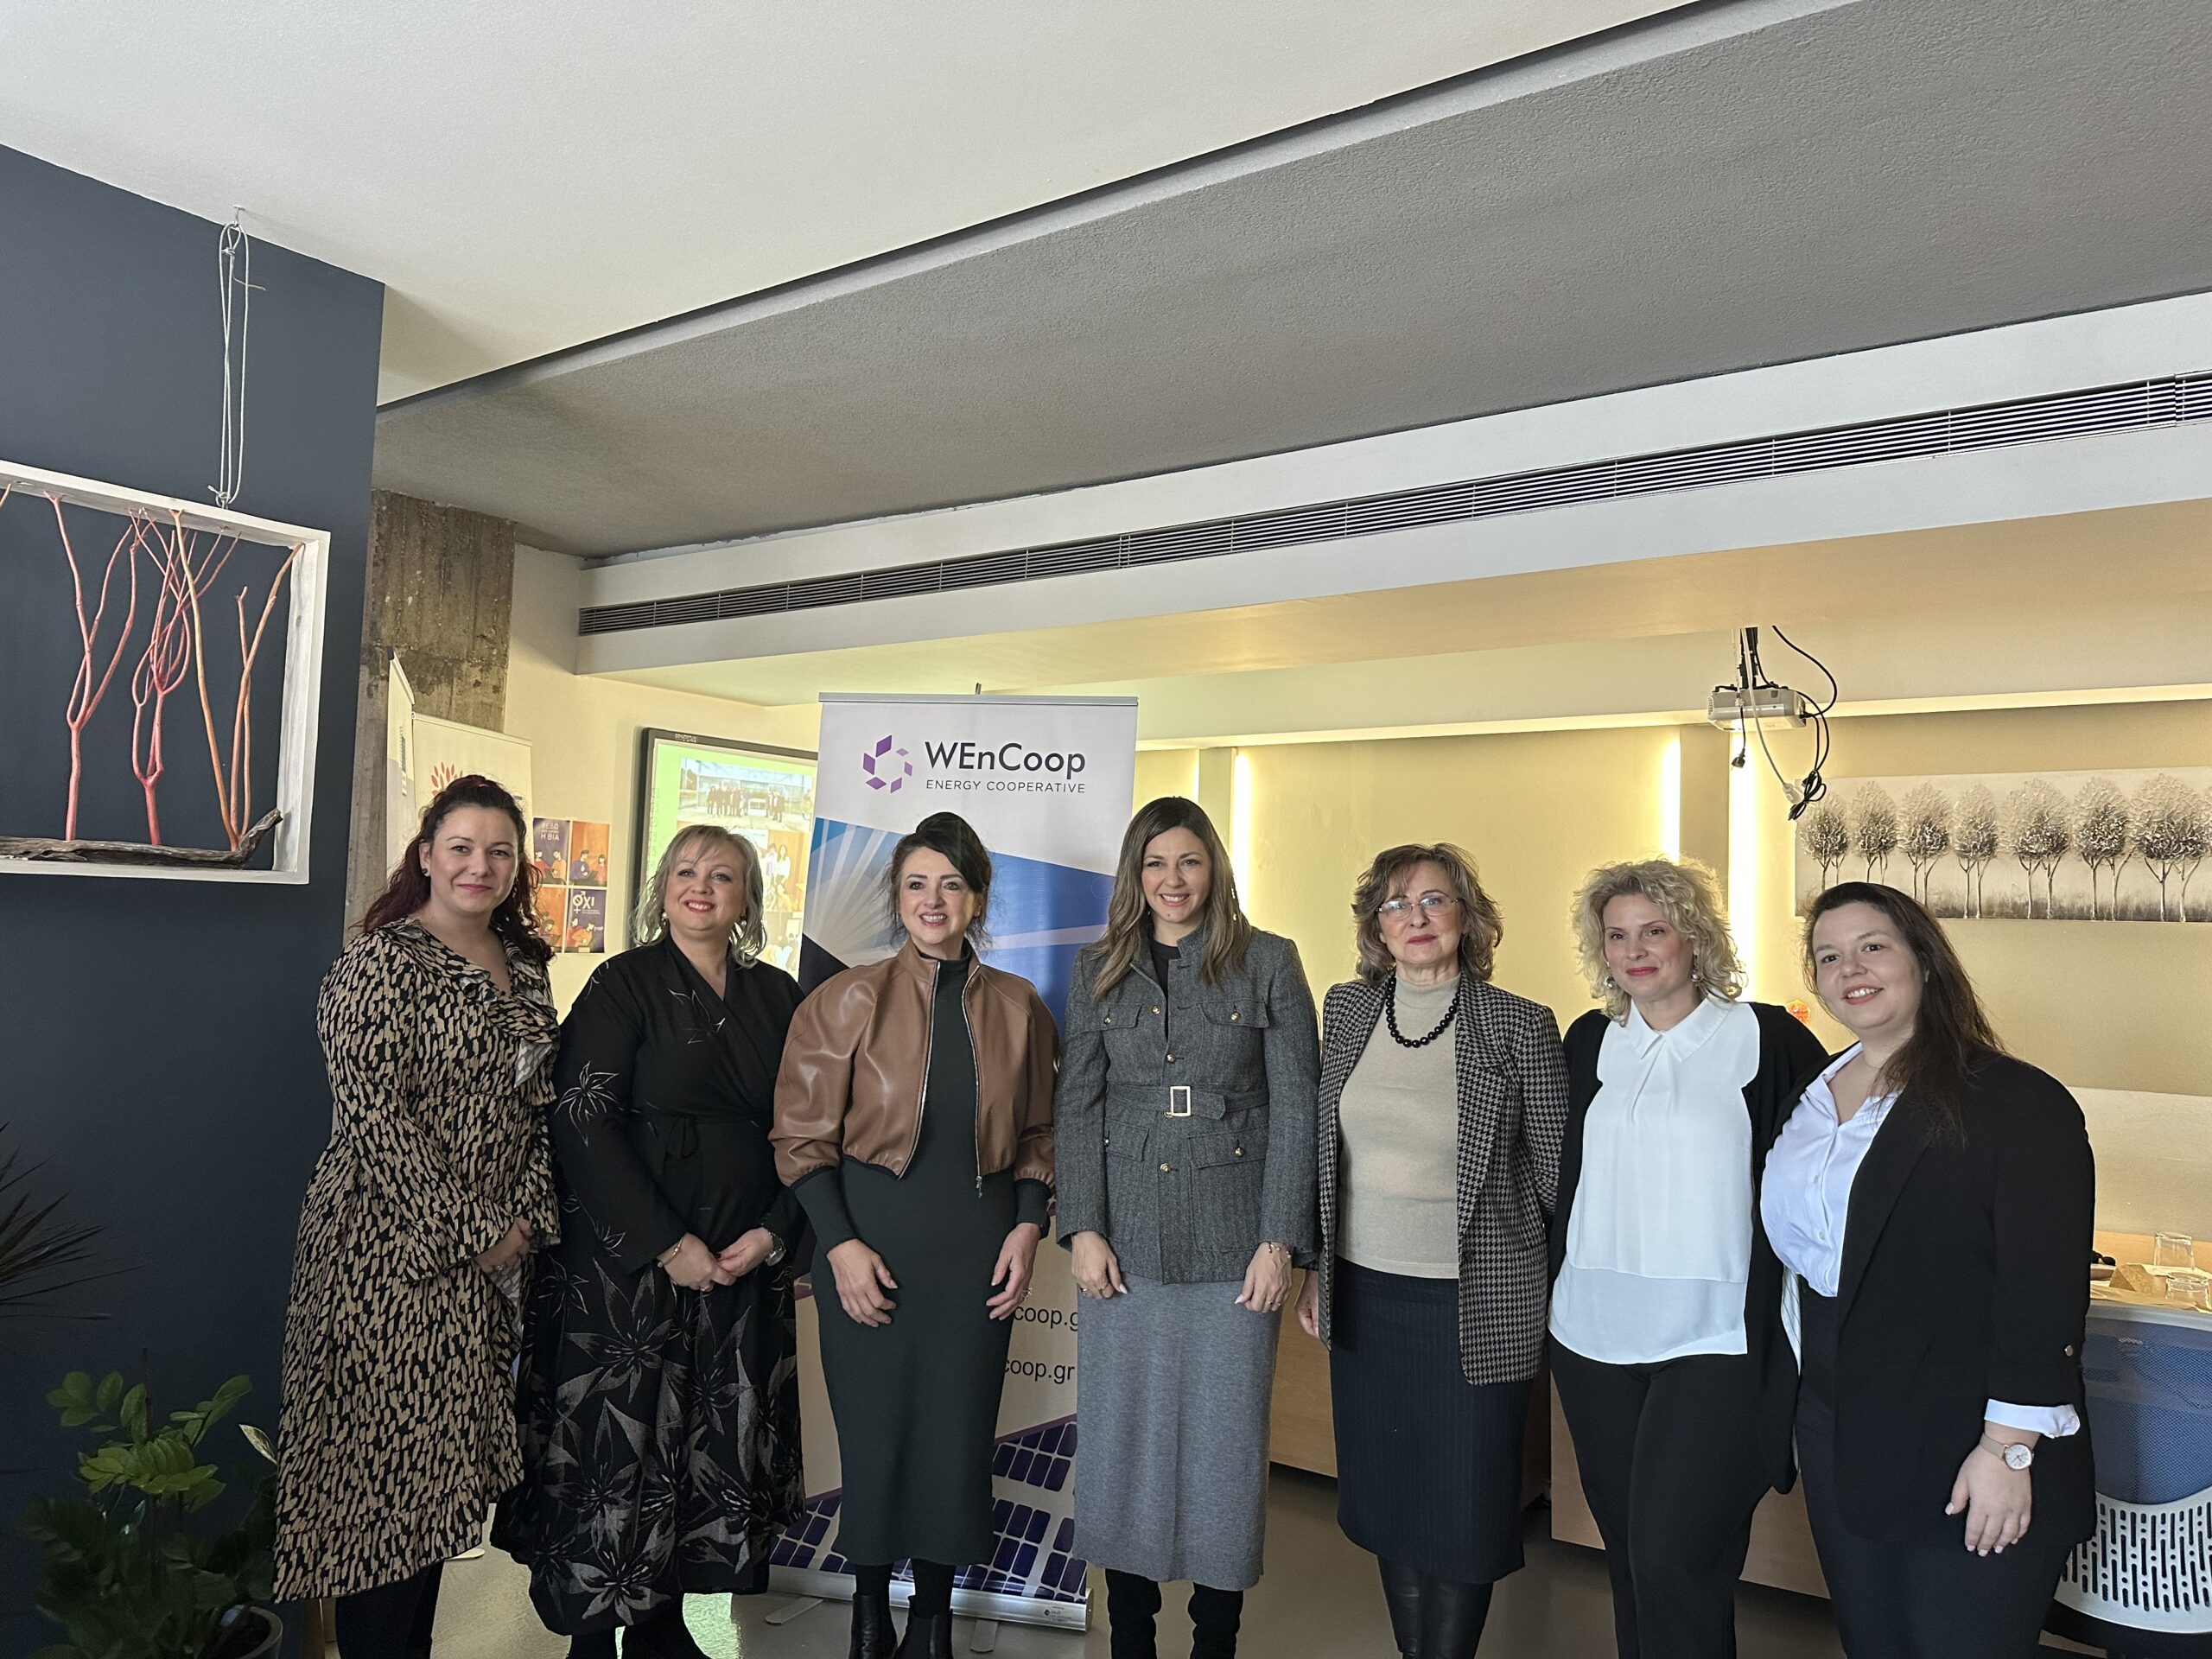 Θεσσαλονίκη: Με την ευρωπαία Επίτροπο Χ. Ντάλι και την Υπουργό Κοινωνικής Συνοχής Σ. Ζαχαράκη συναντήθηκαν εκπρόσωποι του ΣΕΓΕ και της WEnCoop